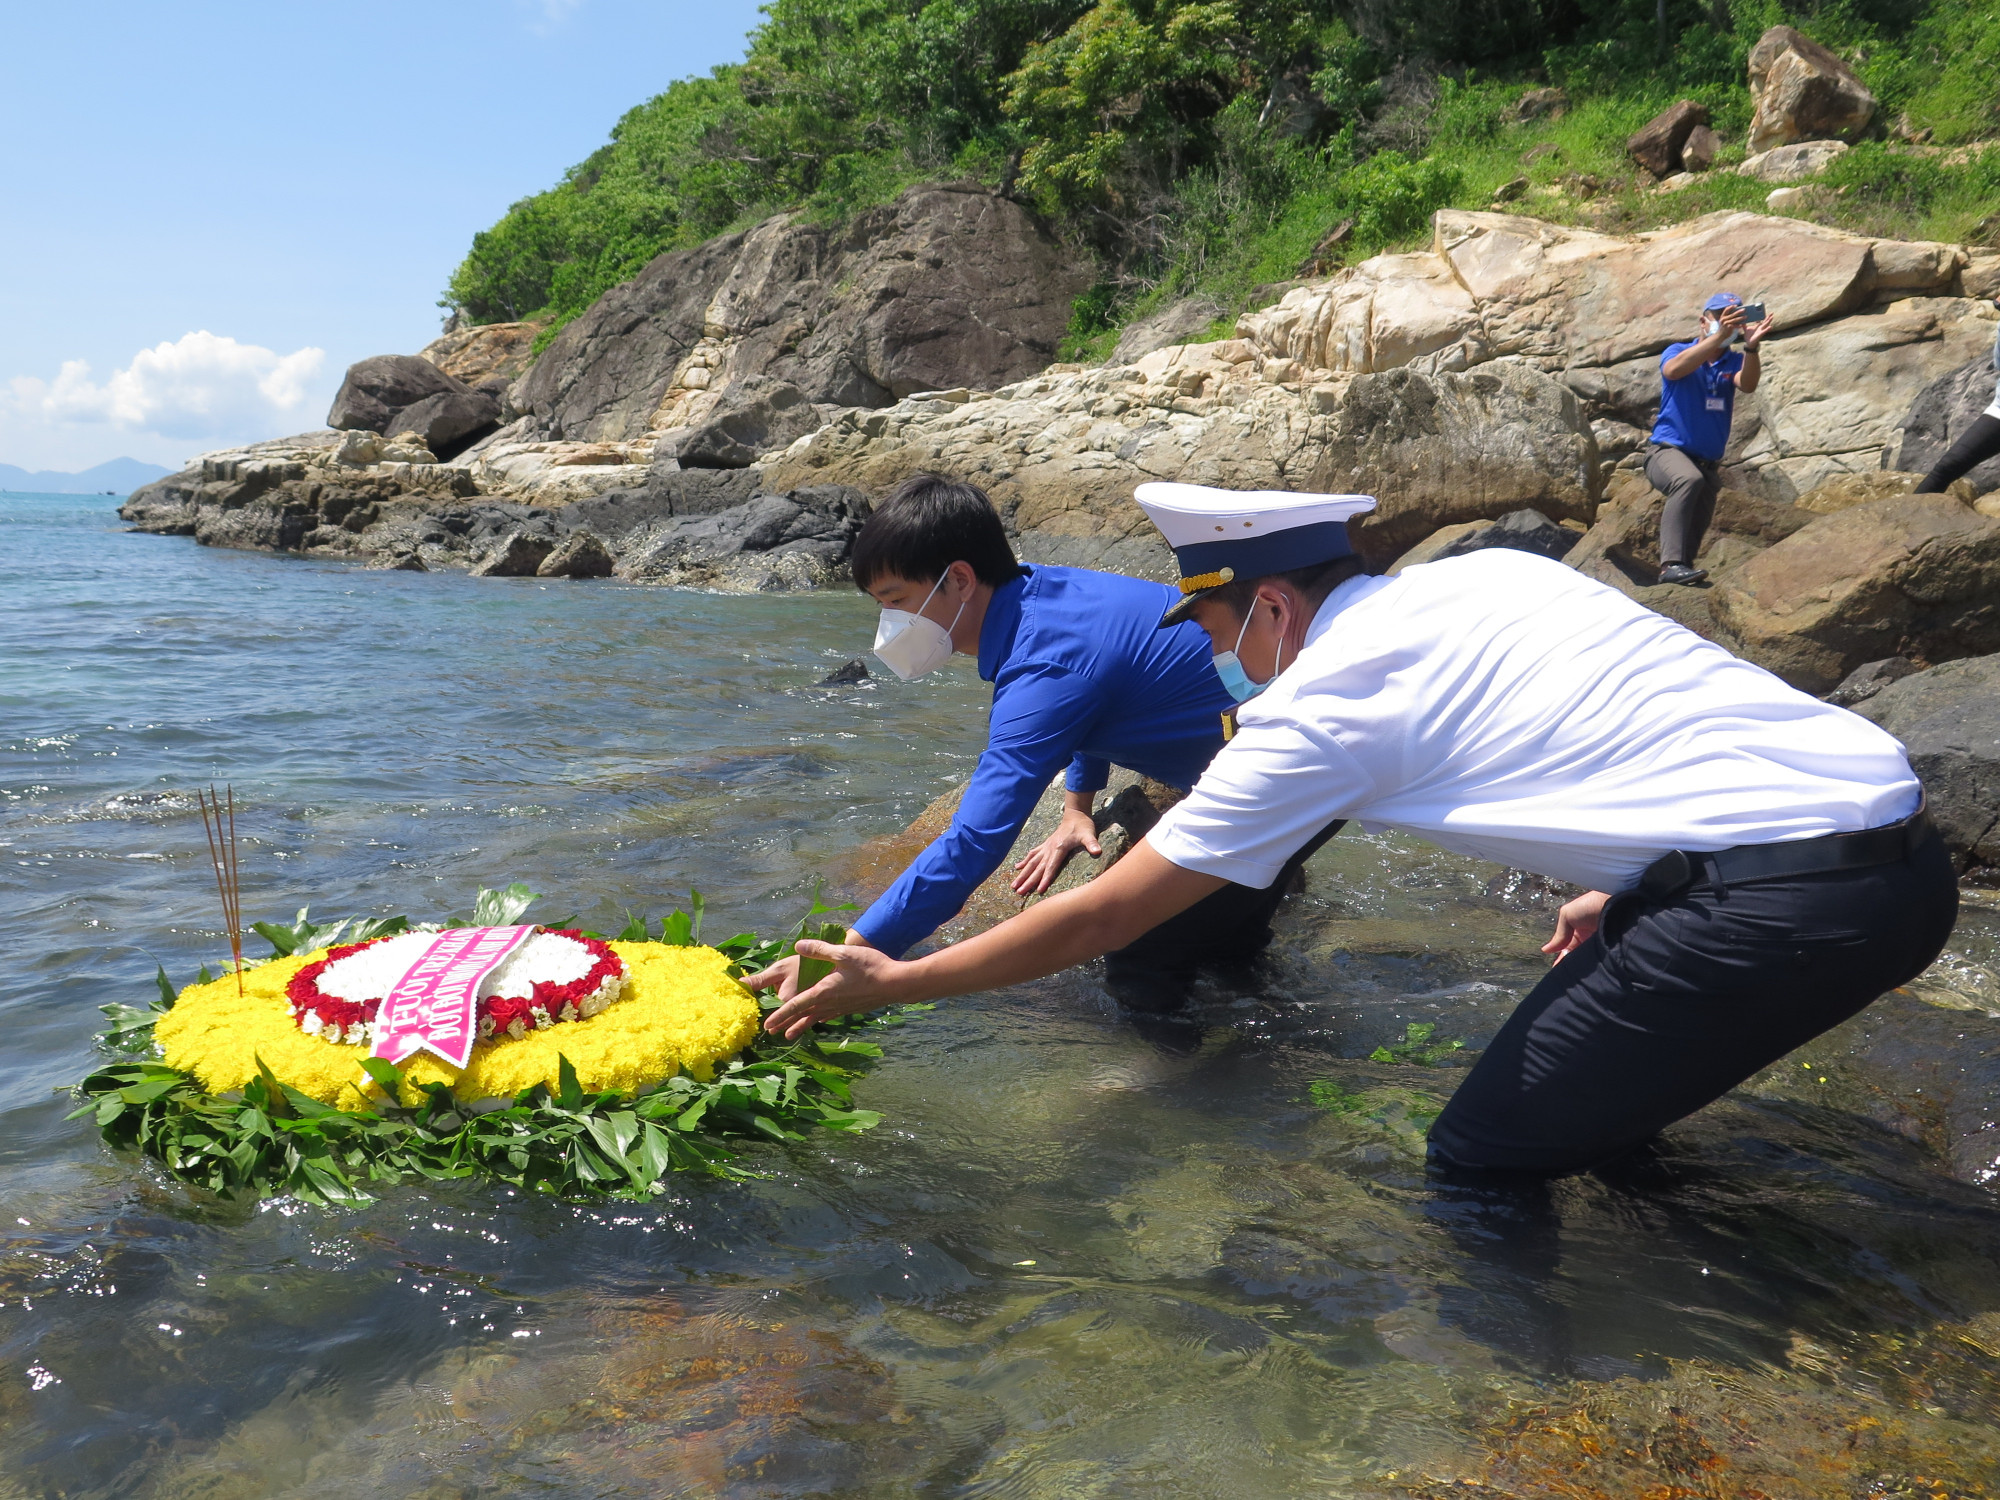 Thả hoa trên biển tri ân các anh hùng liệt sĩ tàu C235 và các anh hùng, liệt sĩ hải quân nhân dân Việt Nam đã hi sinh vì sự nghiệp giải phóng dân tộc, thống nhất đất nước.